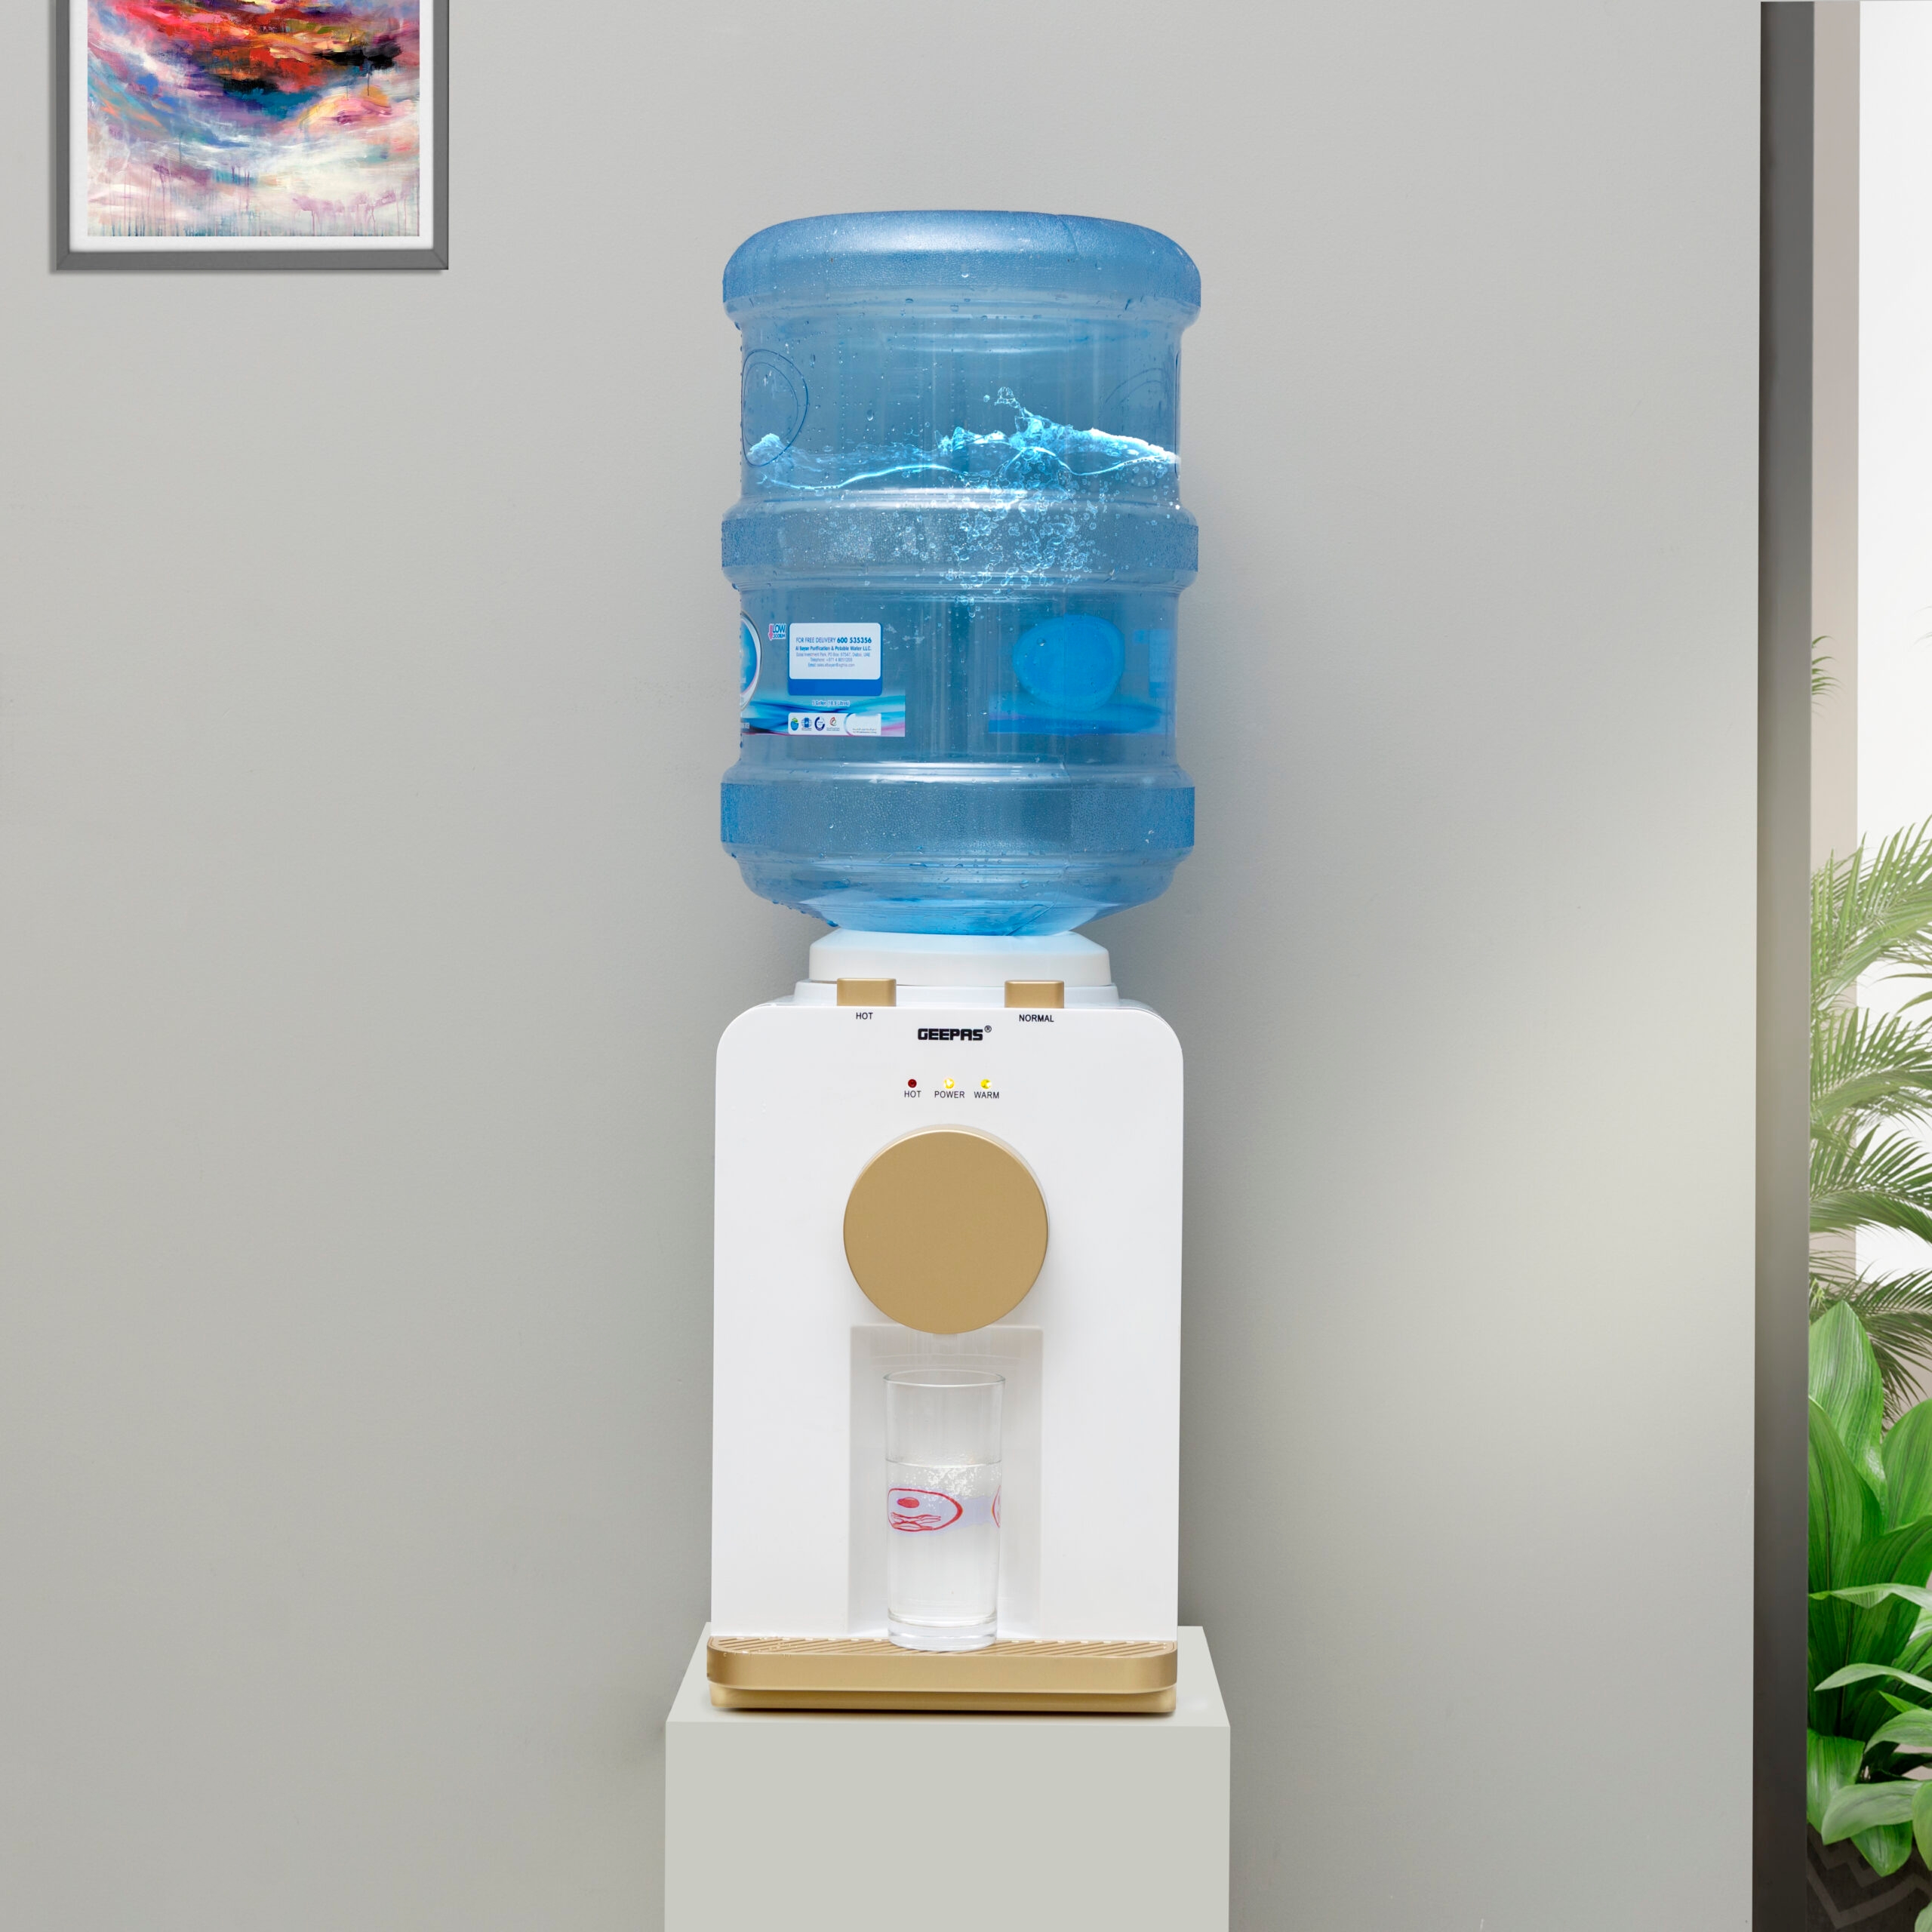 سخان ماء كهربائي بقوة 500 واط Geepas Hot And Normal Water Dispenser - Geepas - 2}